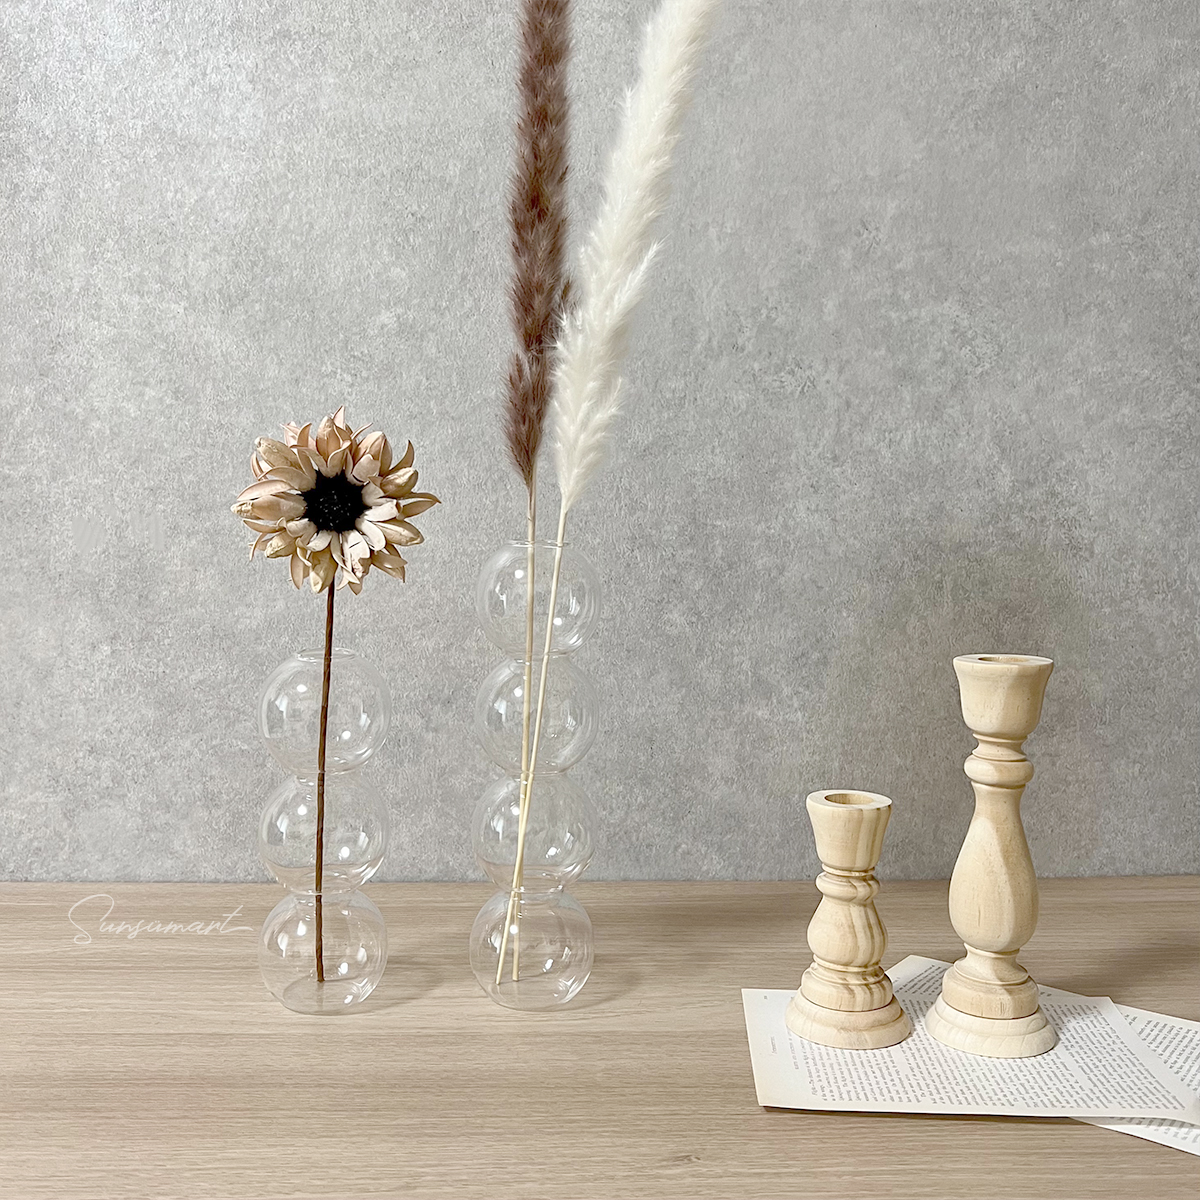 バブル フラワーベース 花瓶 花器 韓国インテリア 3連 アジアン雑貨